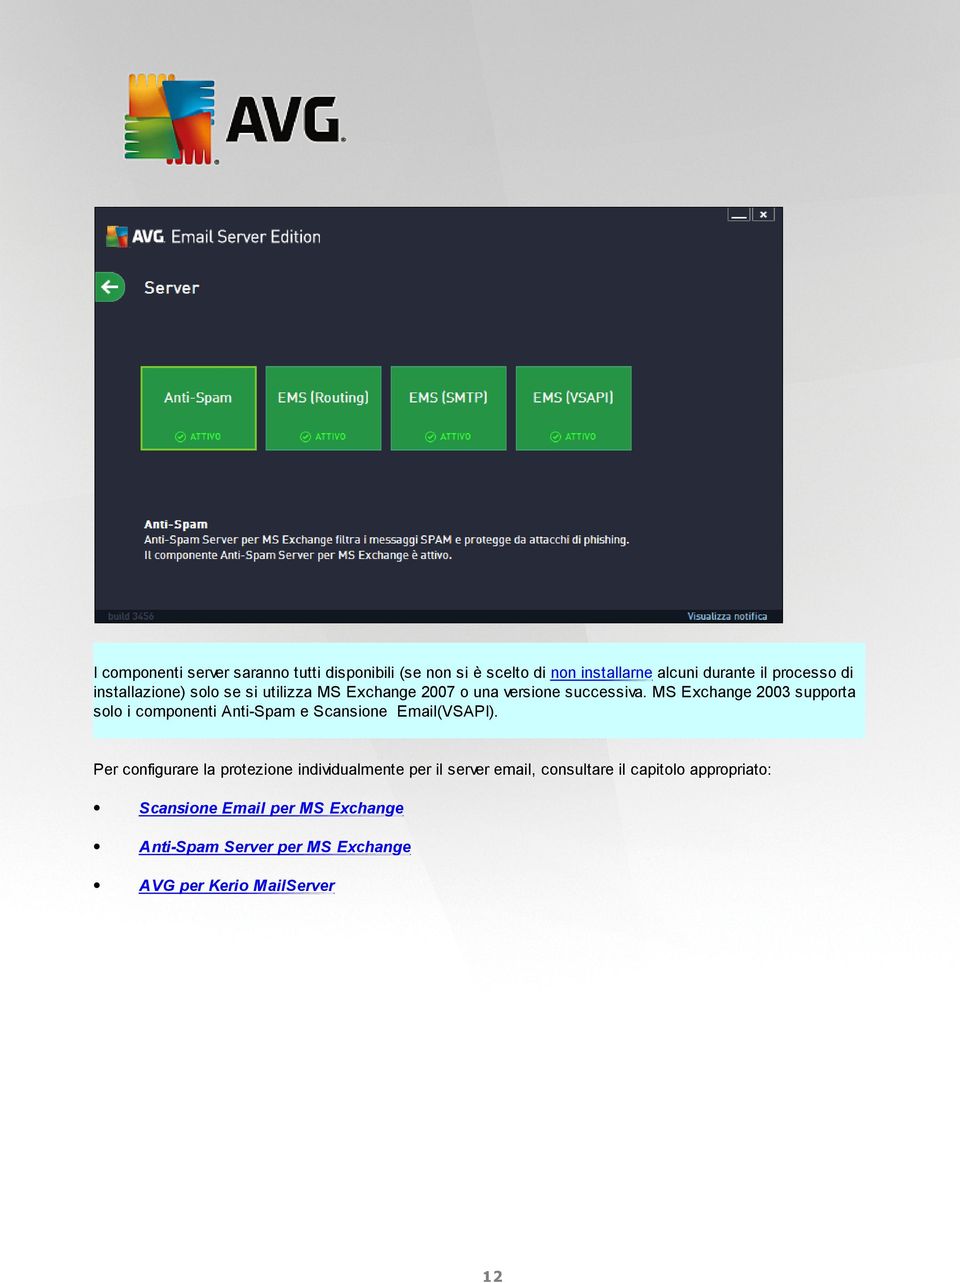 MS Exchange 2003 supporta solo i componenti Anti-Spam e Scansione Email(VSAPI).